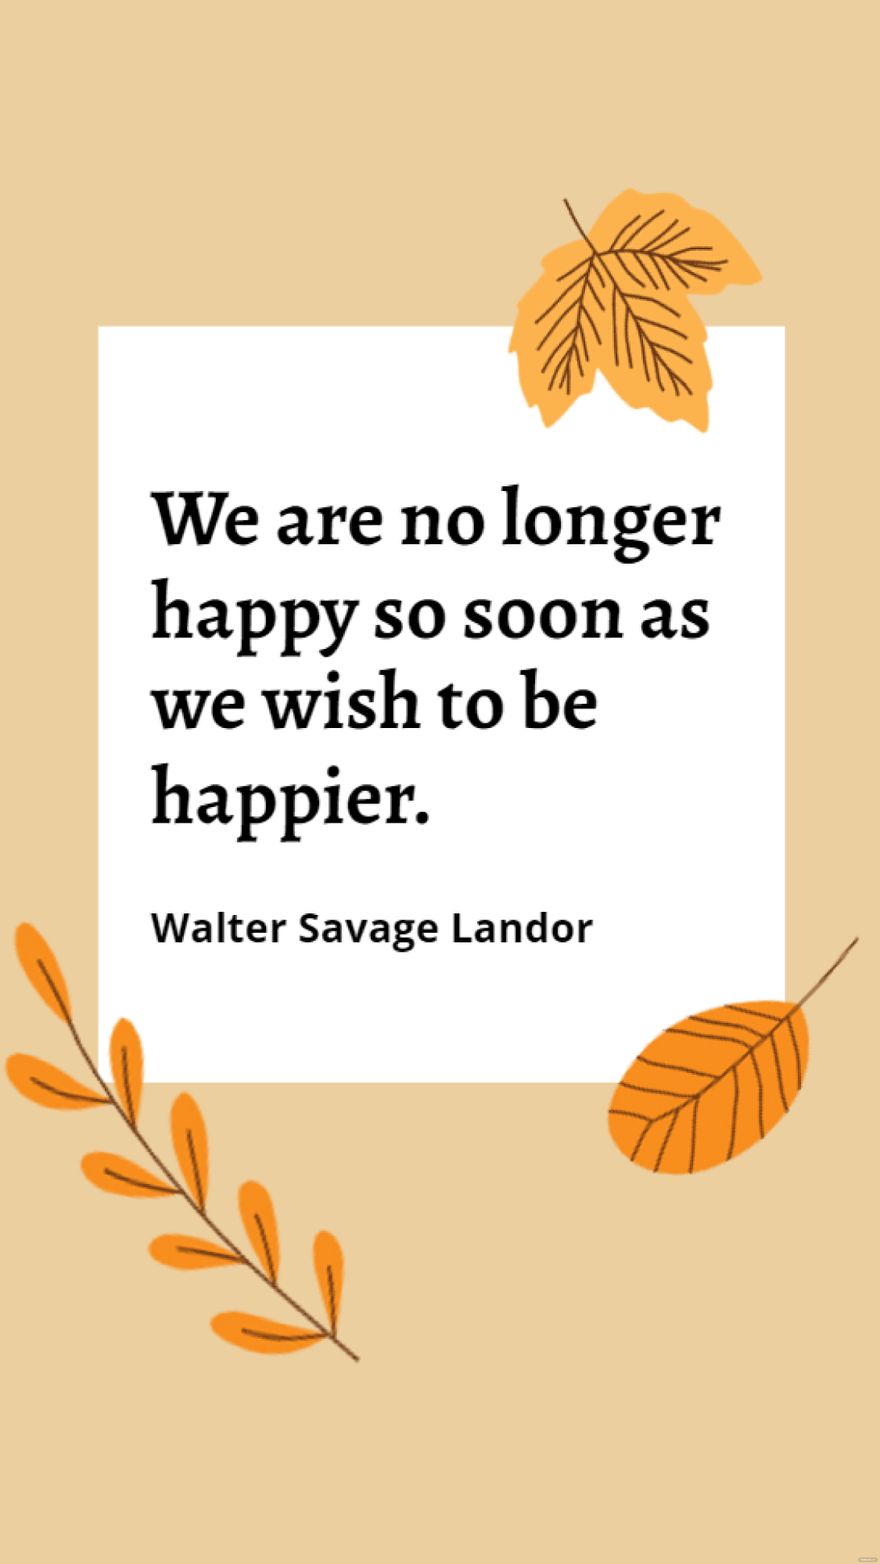 Walter Savage Landor - We are no longer happy so soon as we wish to be happier. in JPG